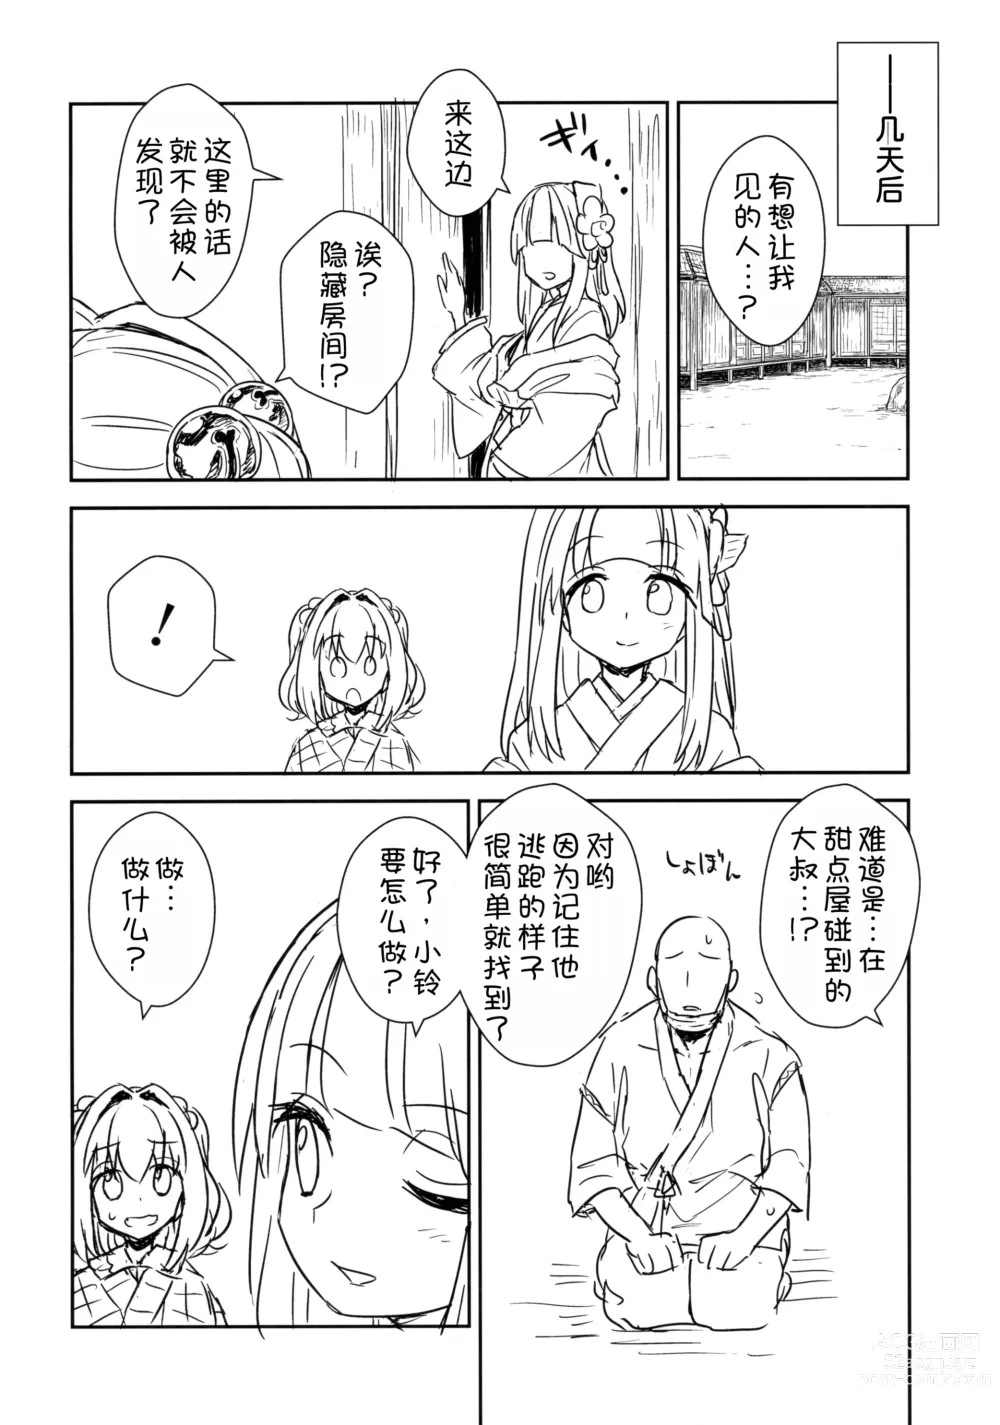 Page 8 of doujinshi Akyuu to Kosuzu no Itte miyou Yatte miyou